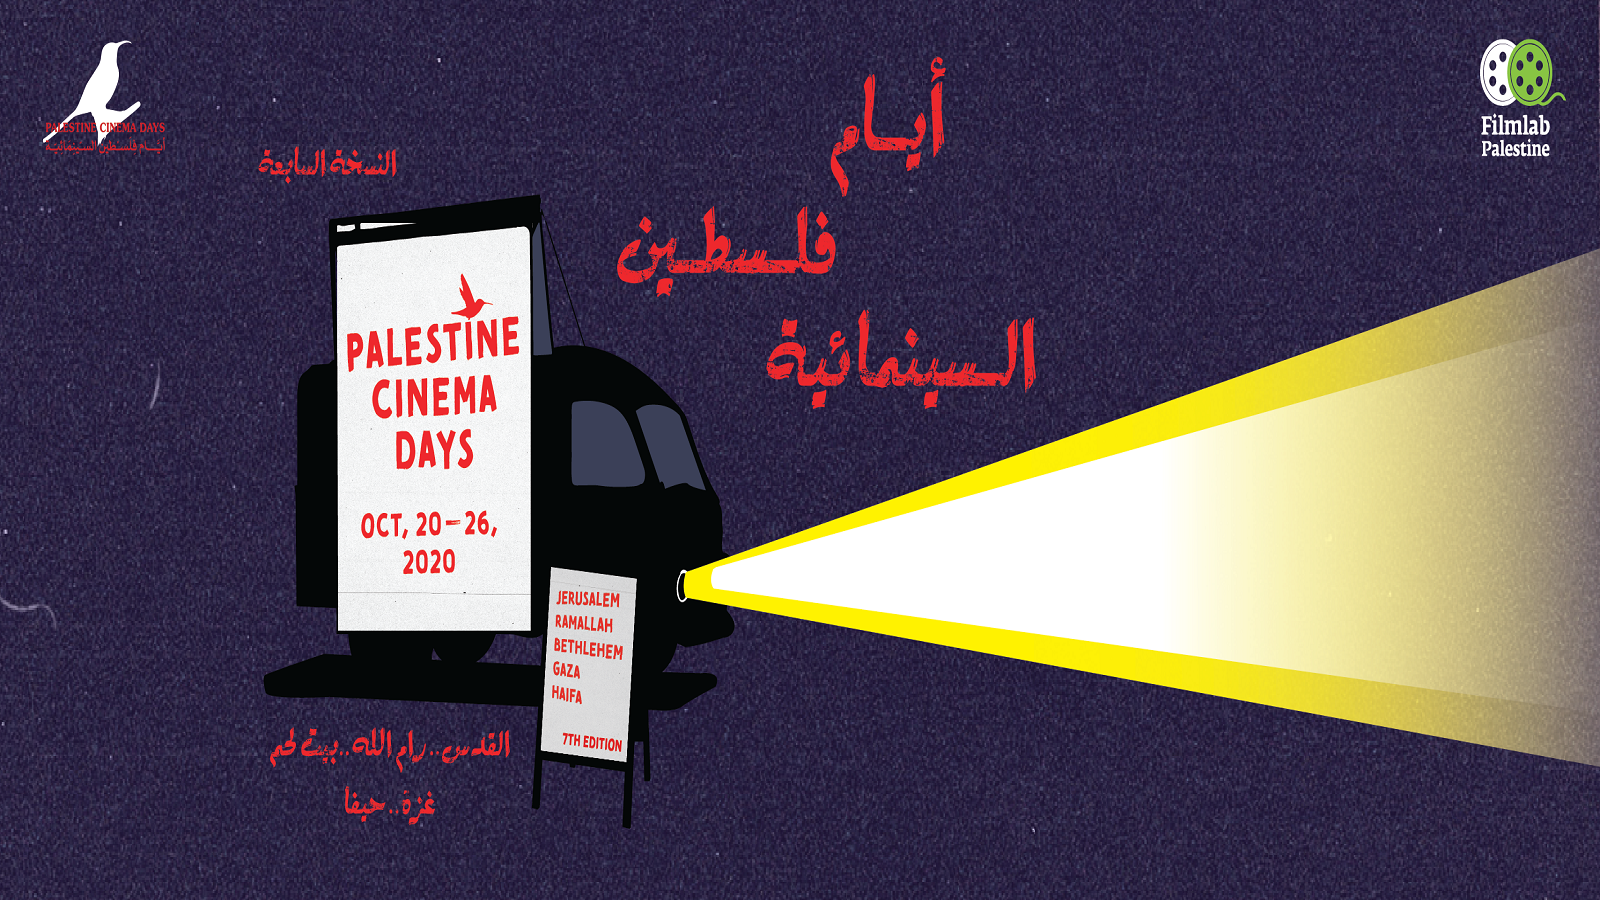 "أيام فلسطين السينمائية" يتحدى كورونا: قصص الإنسان أينما كان